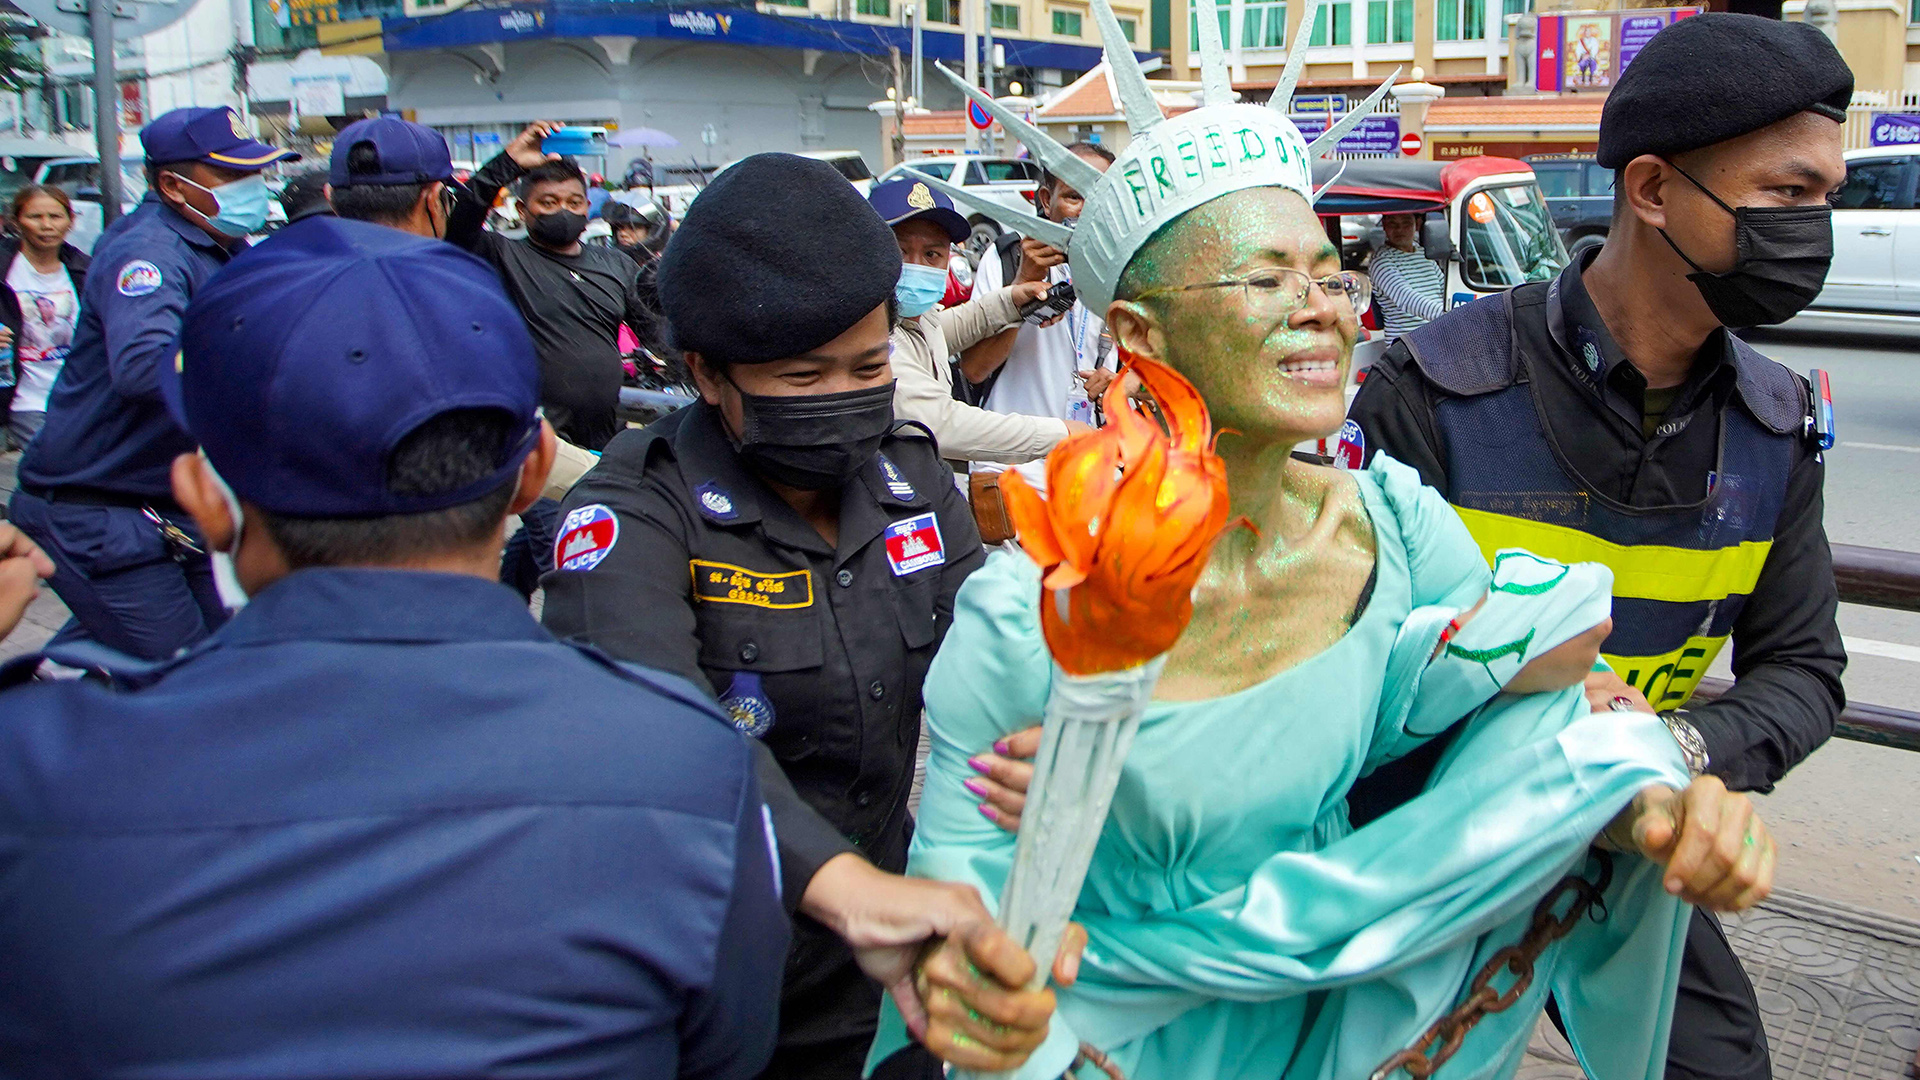 Theary Seng, verkleidet als Freiheitsstatue, wird von Polizisten abgeführt. | AFP